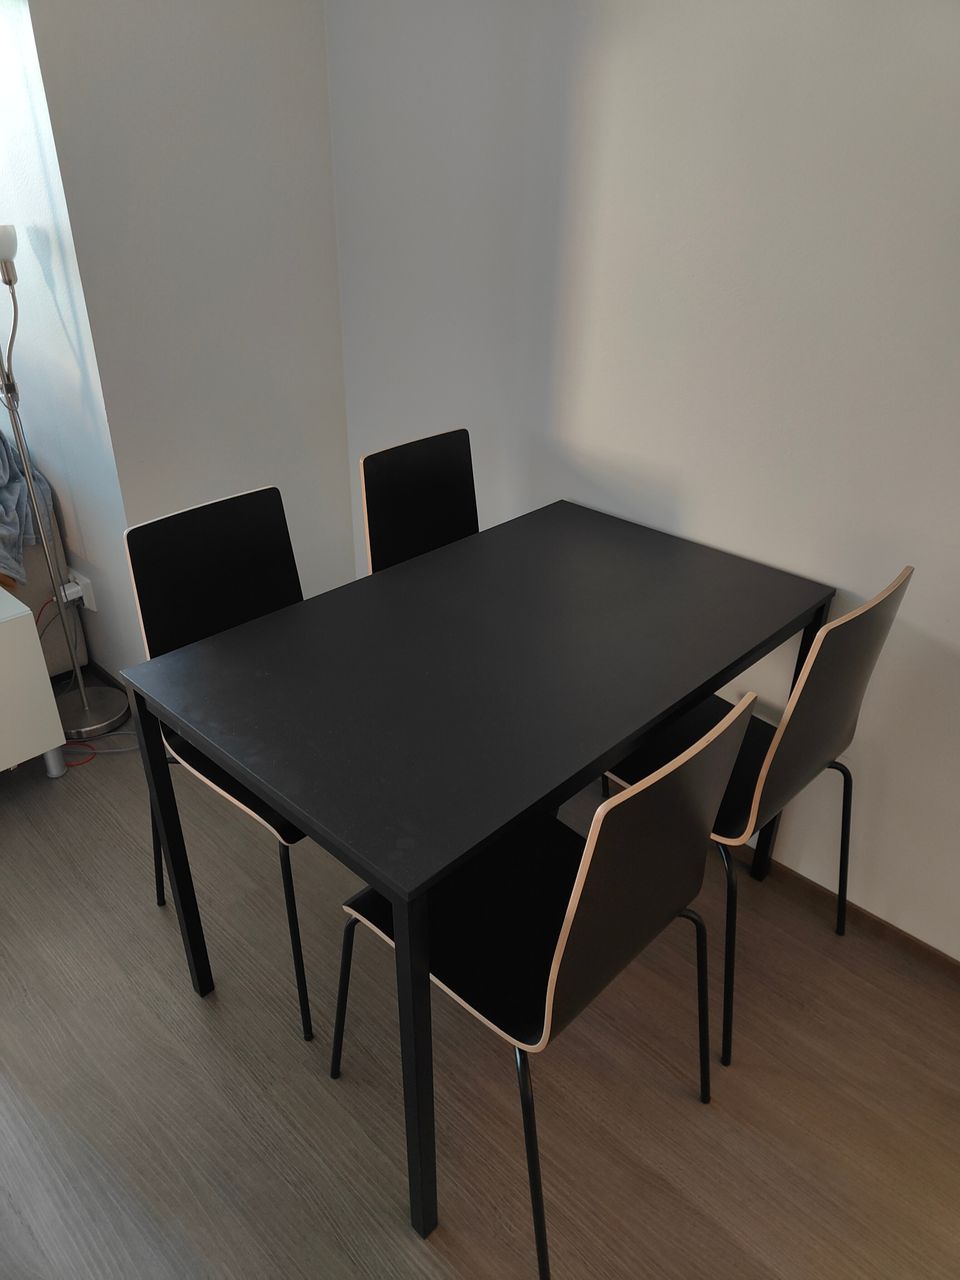 Myydään Ikean Tärendö pöytä ja Ikea Martin tuolit 4 kpl